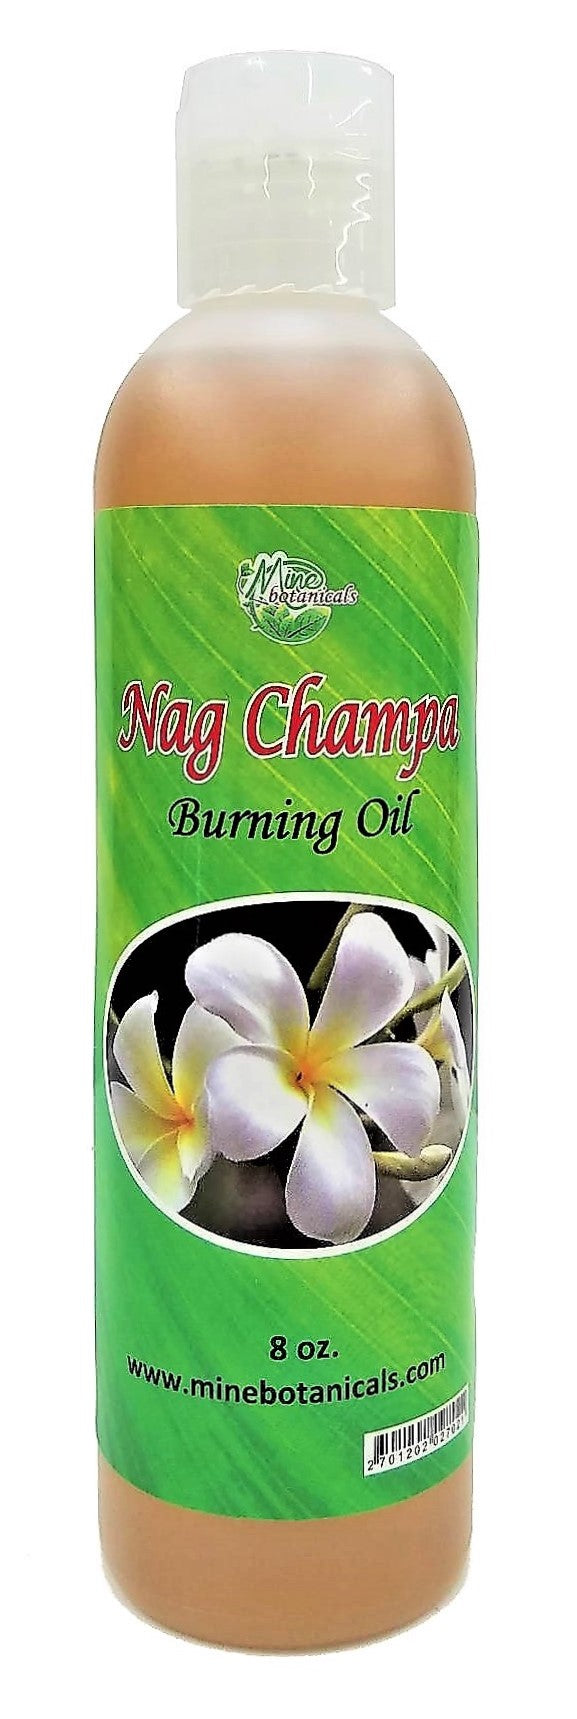 Nag Champa Burning Oil